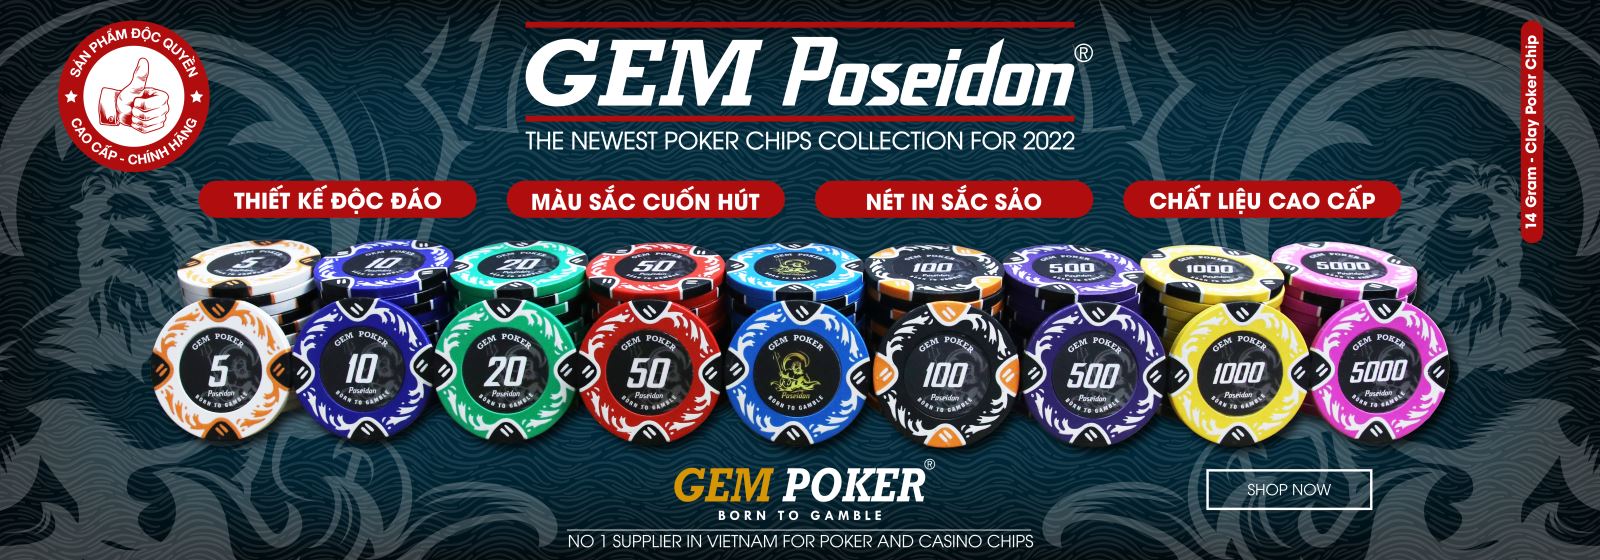 300 Chip Poker Clay POSEIDON Ver 2.0 - 2022